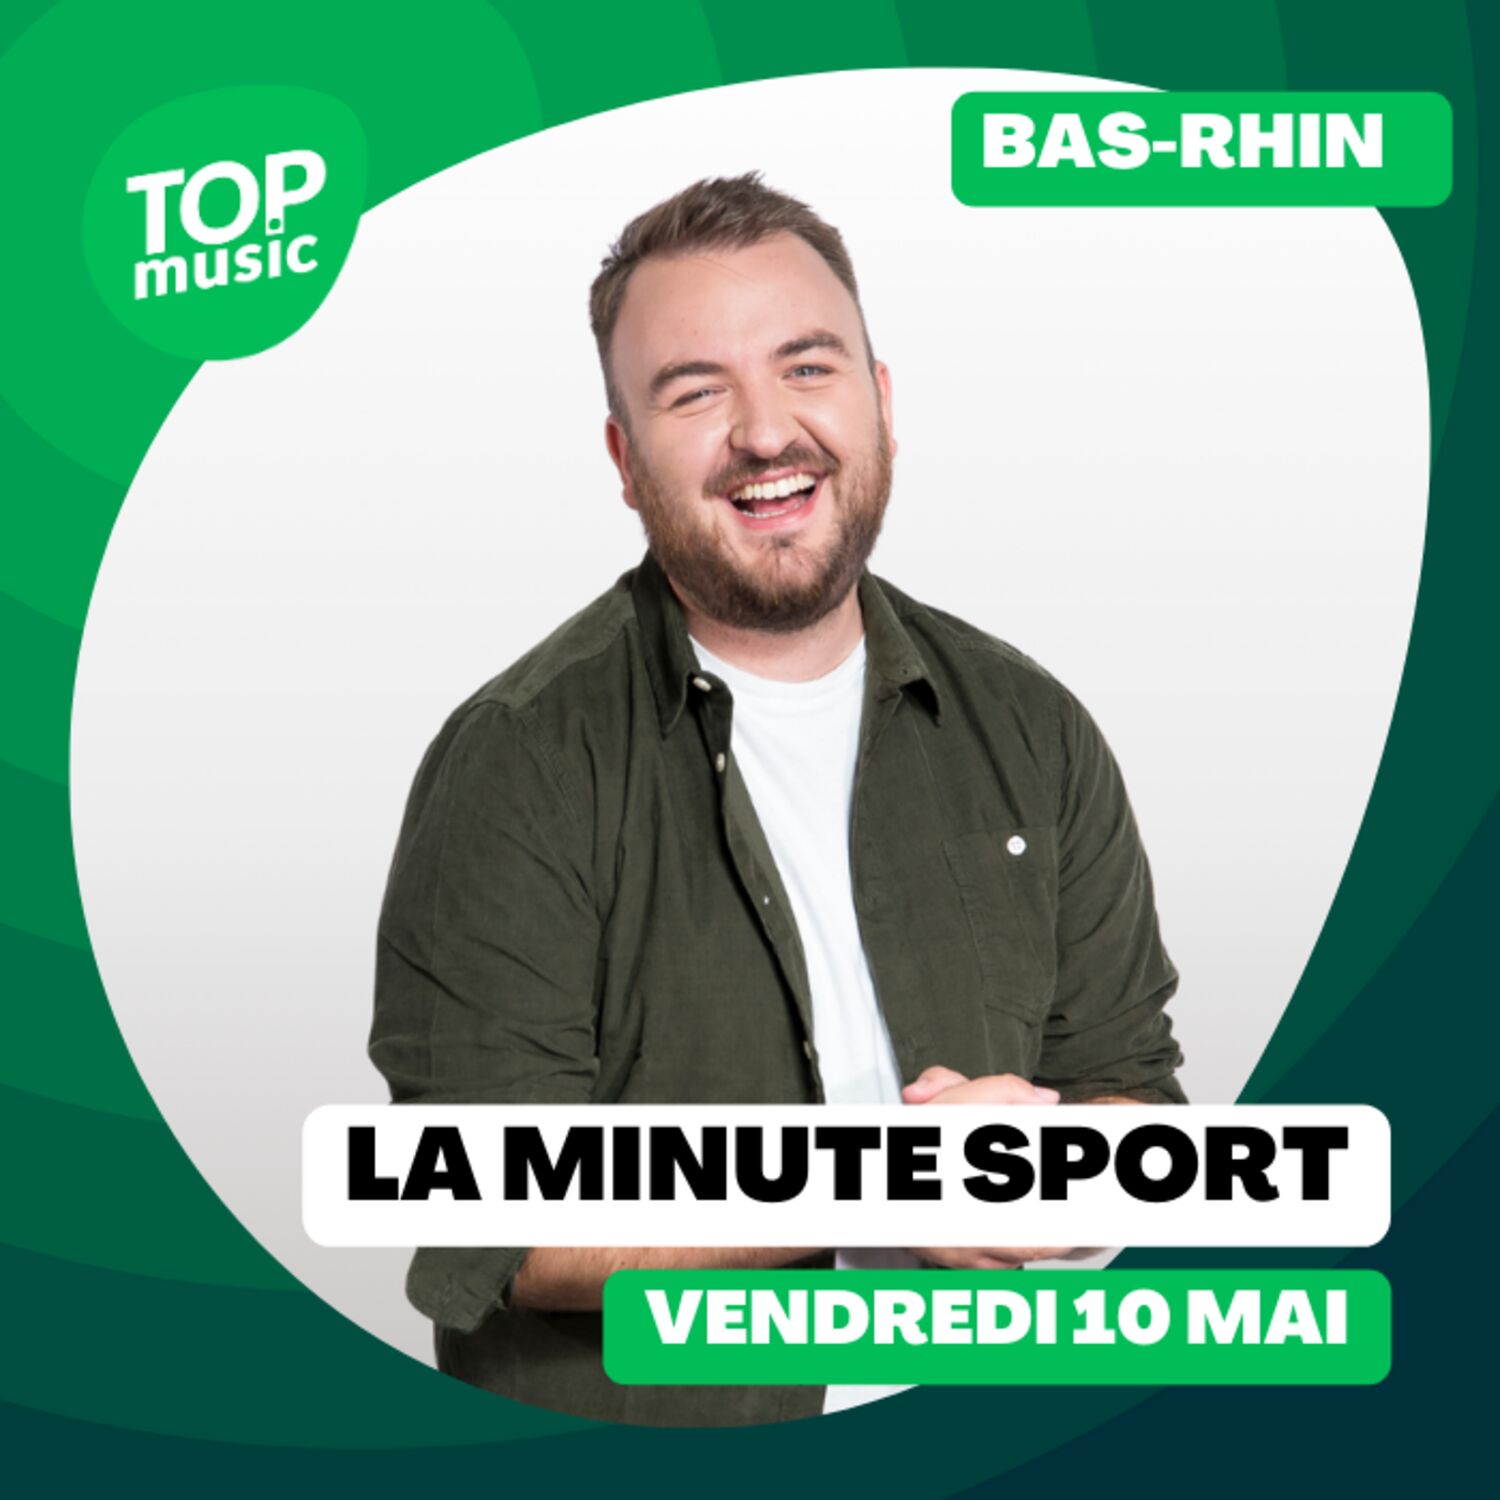 La Minute sport du Bas-Rhin - vendredi 10 mai